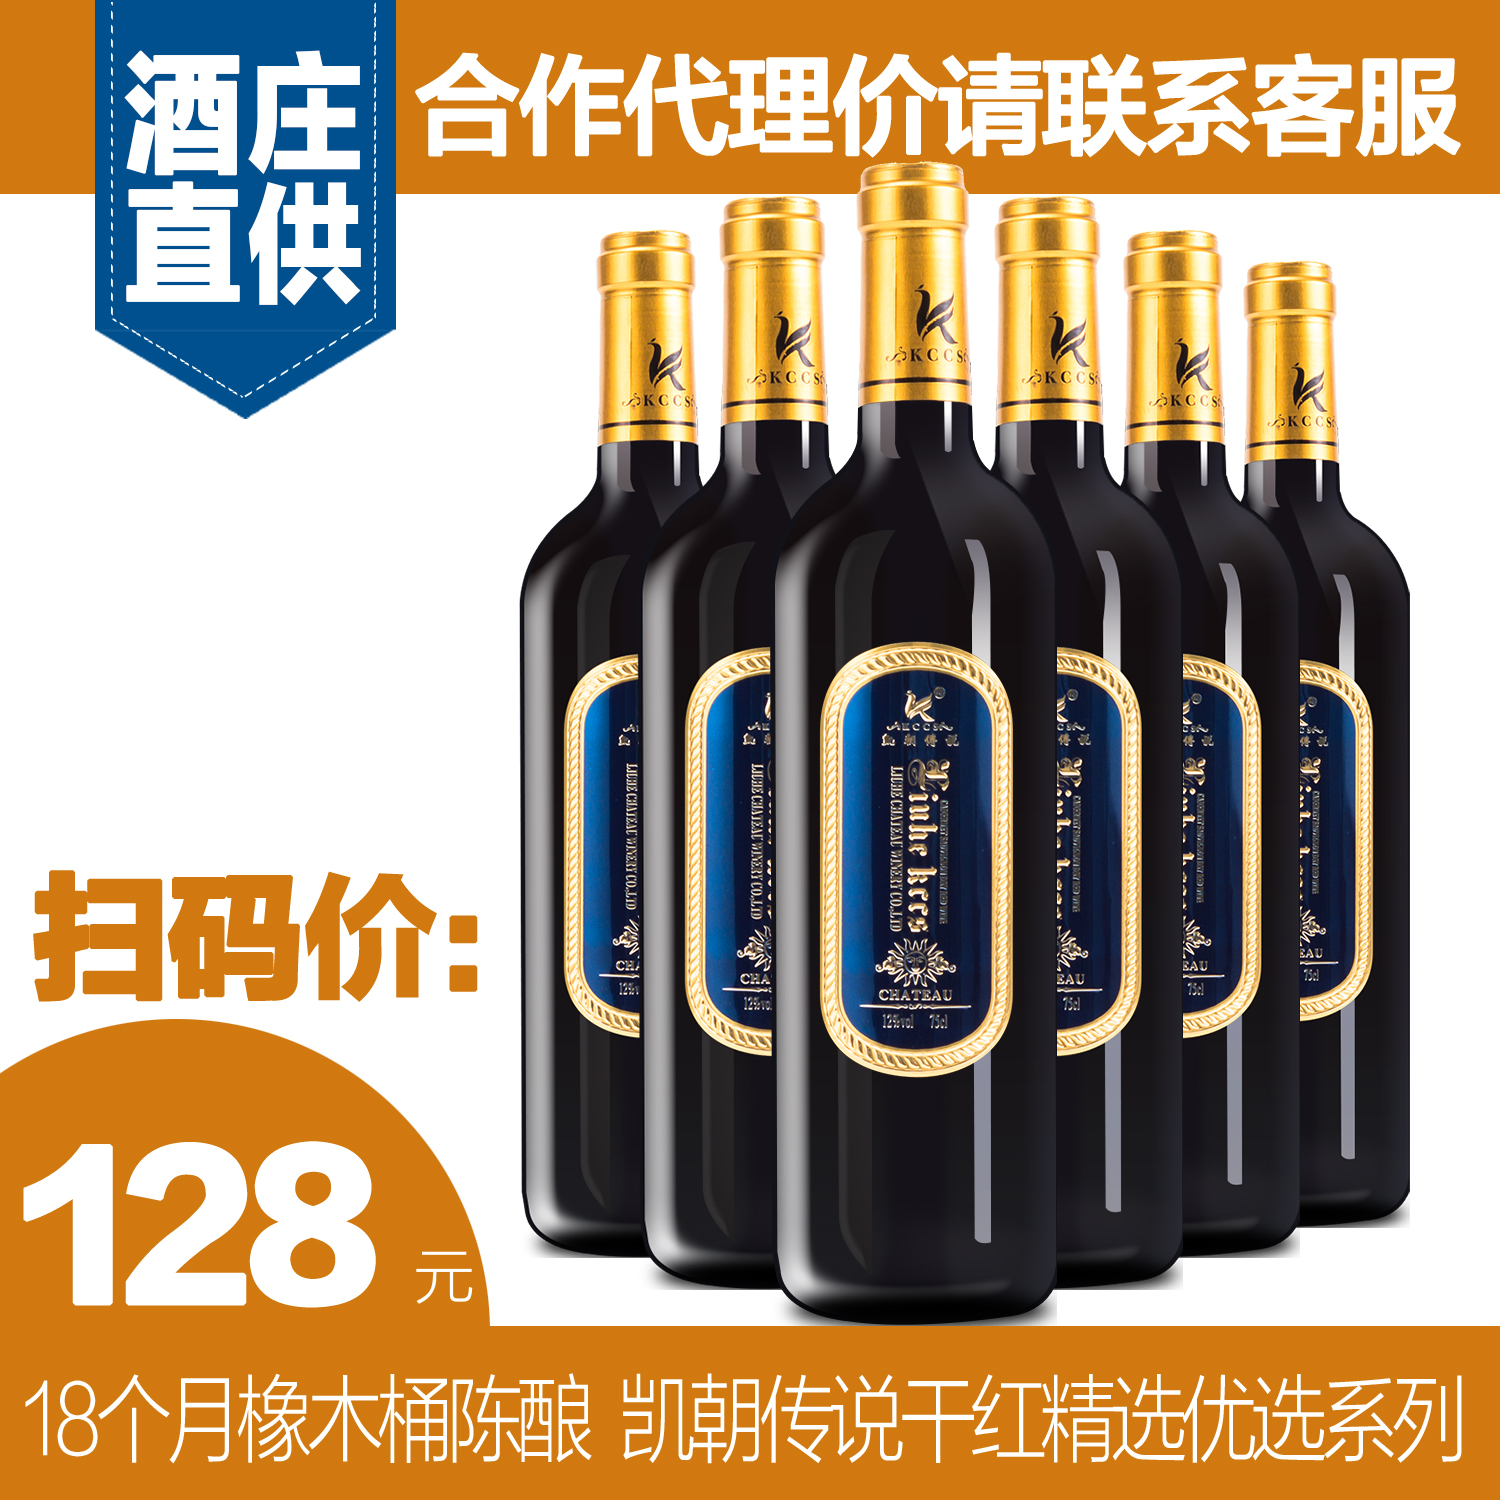 广州红酒品牌代理|广州进口红酒批发|广州红酒品牌哪家好图片